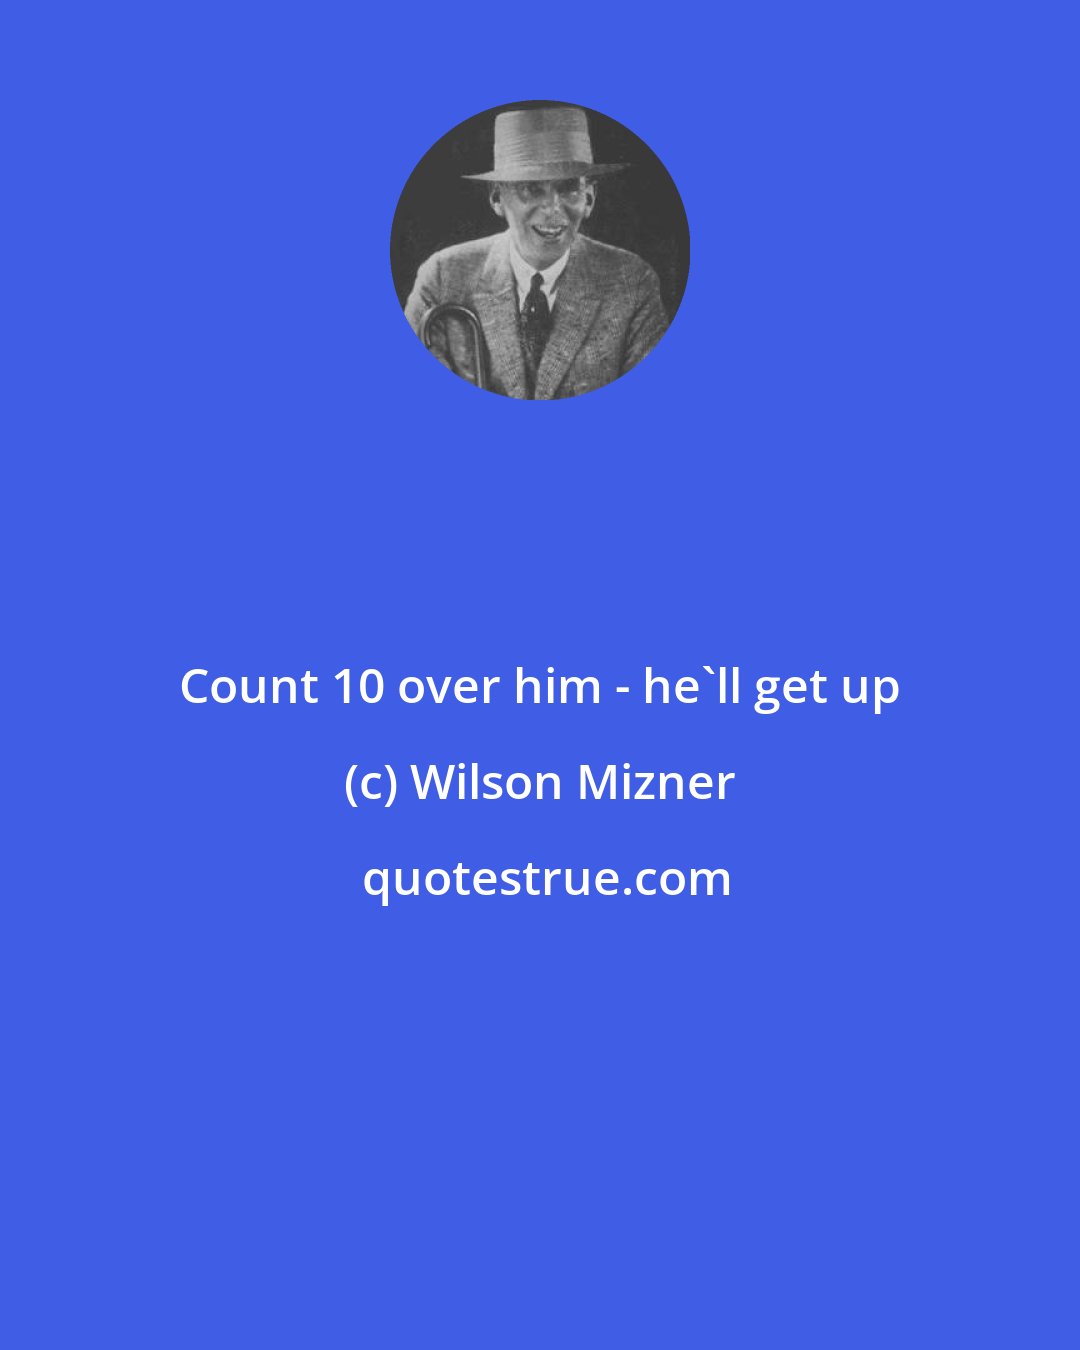 Wilson Mizner: Count 10 over him - he'll get up